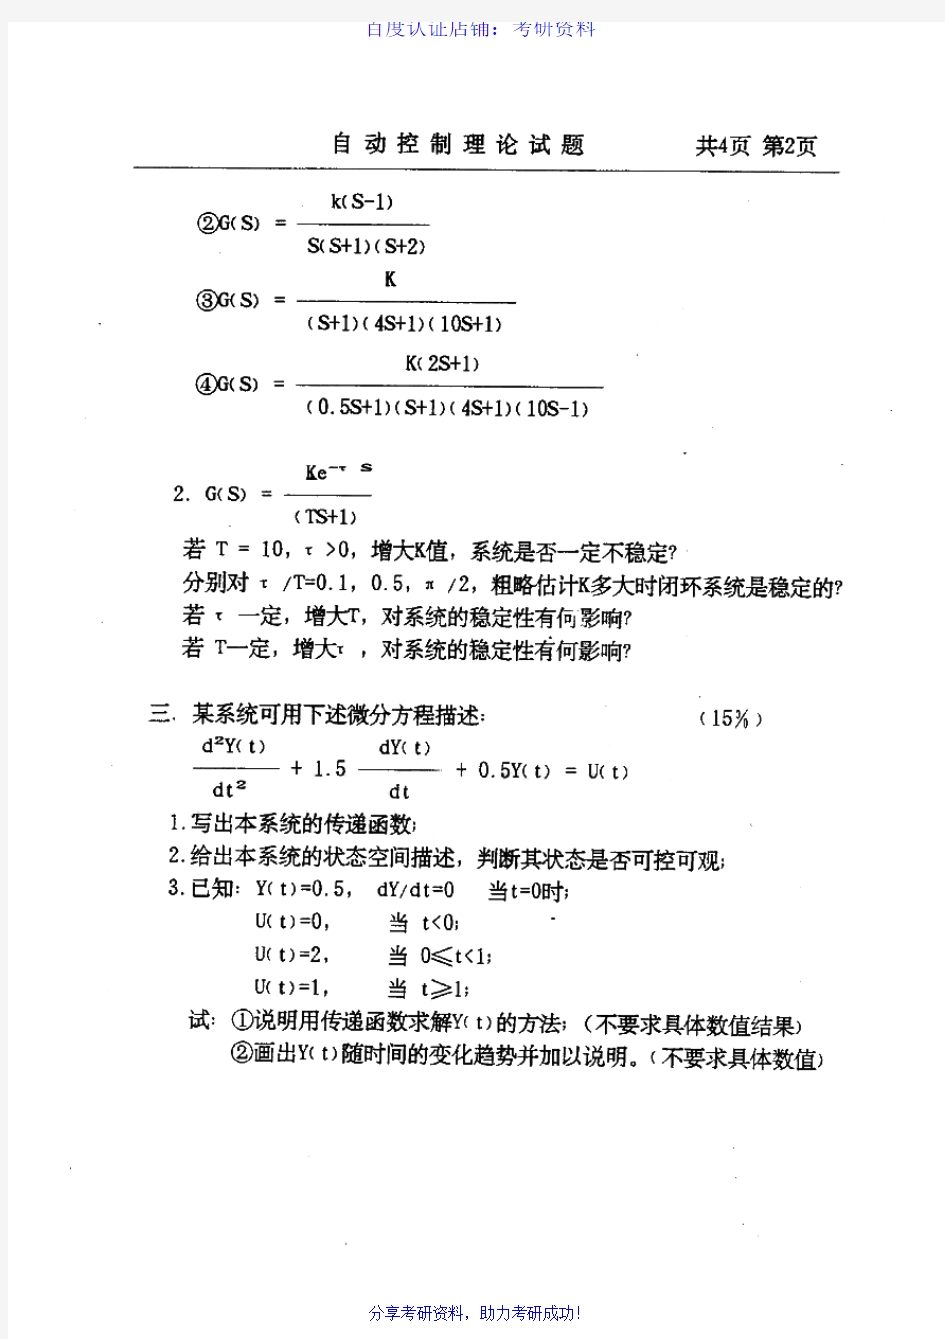 中国石油大学(北京)854自动控制原理历年考研试题